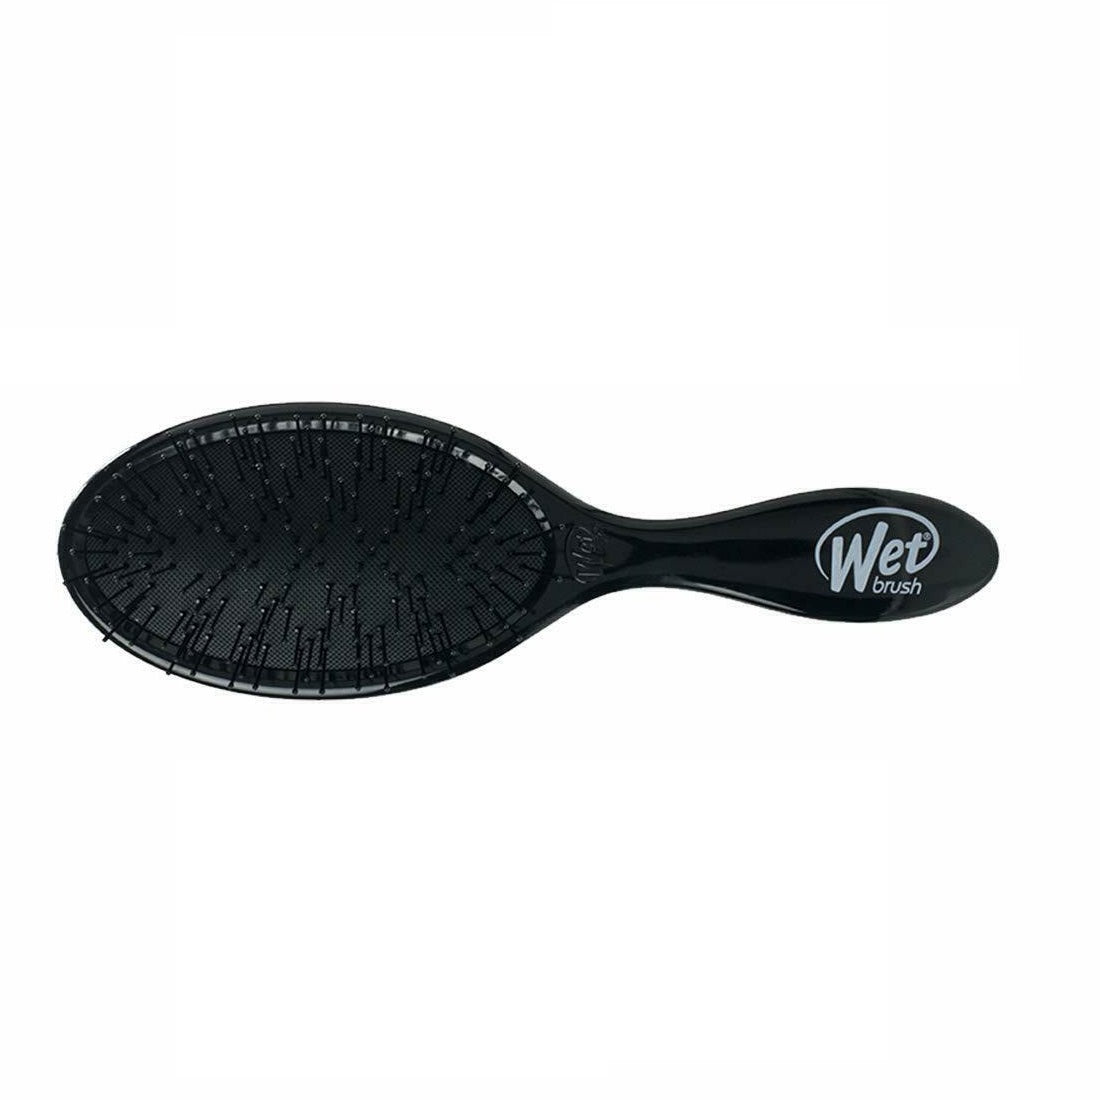 Wet Brush Original Detangler Hair Brush Black